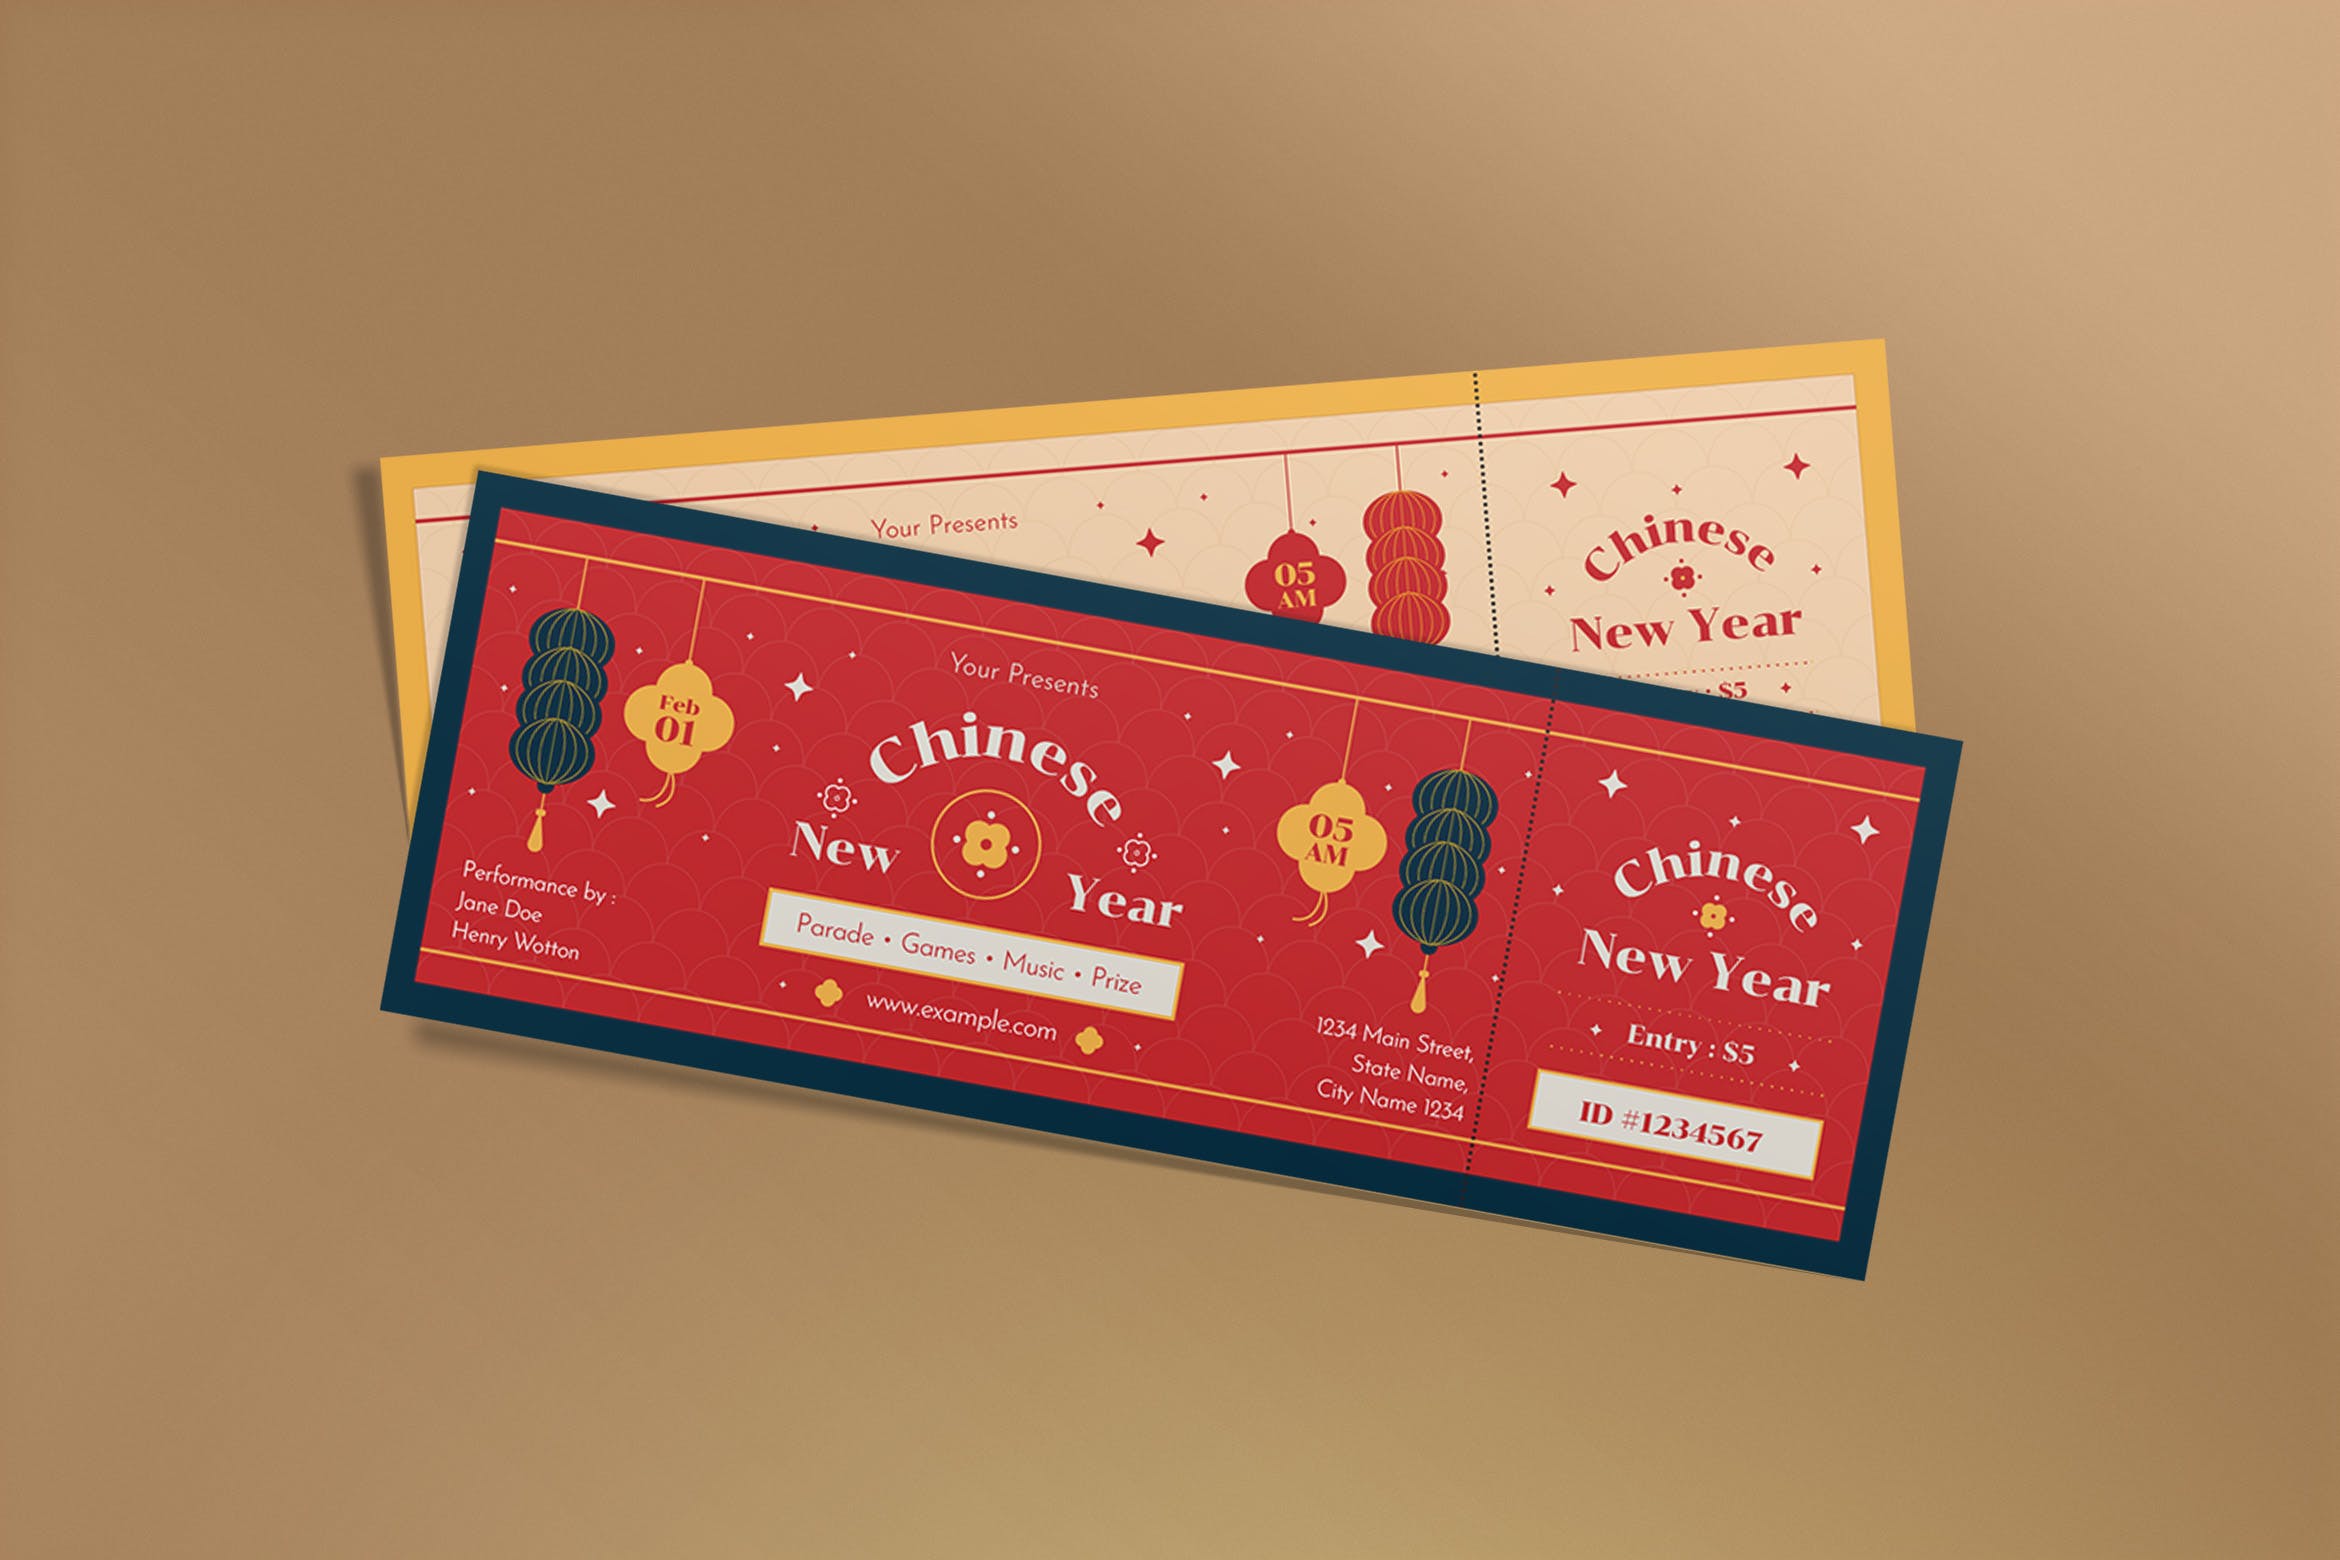 中国农历新年门票设计模板 Chinese Lunar New Year Ticket 设计素材 第1张